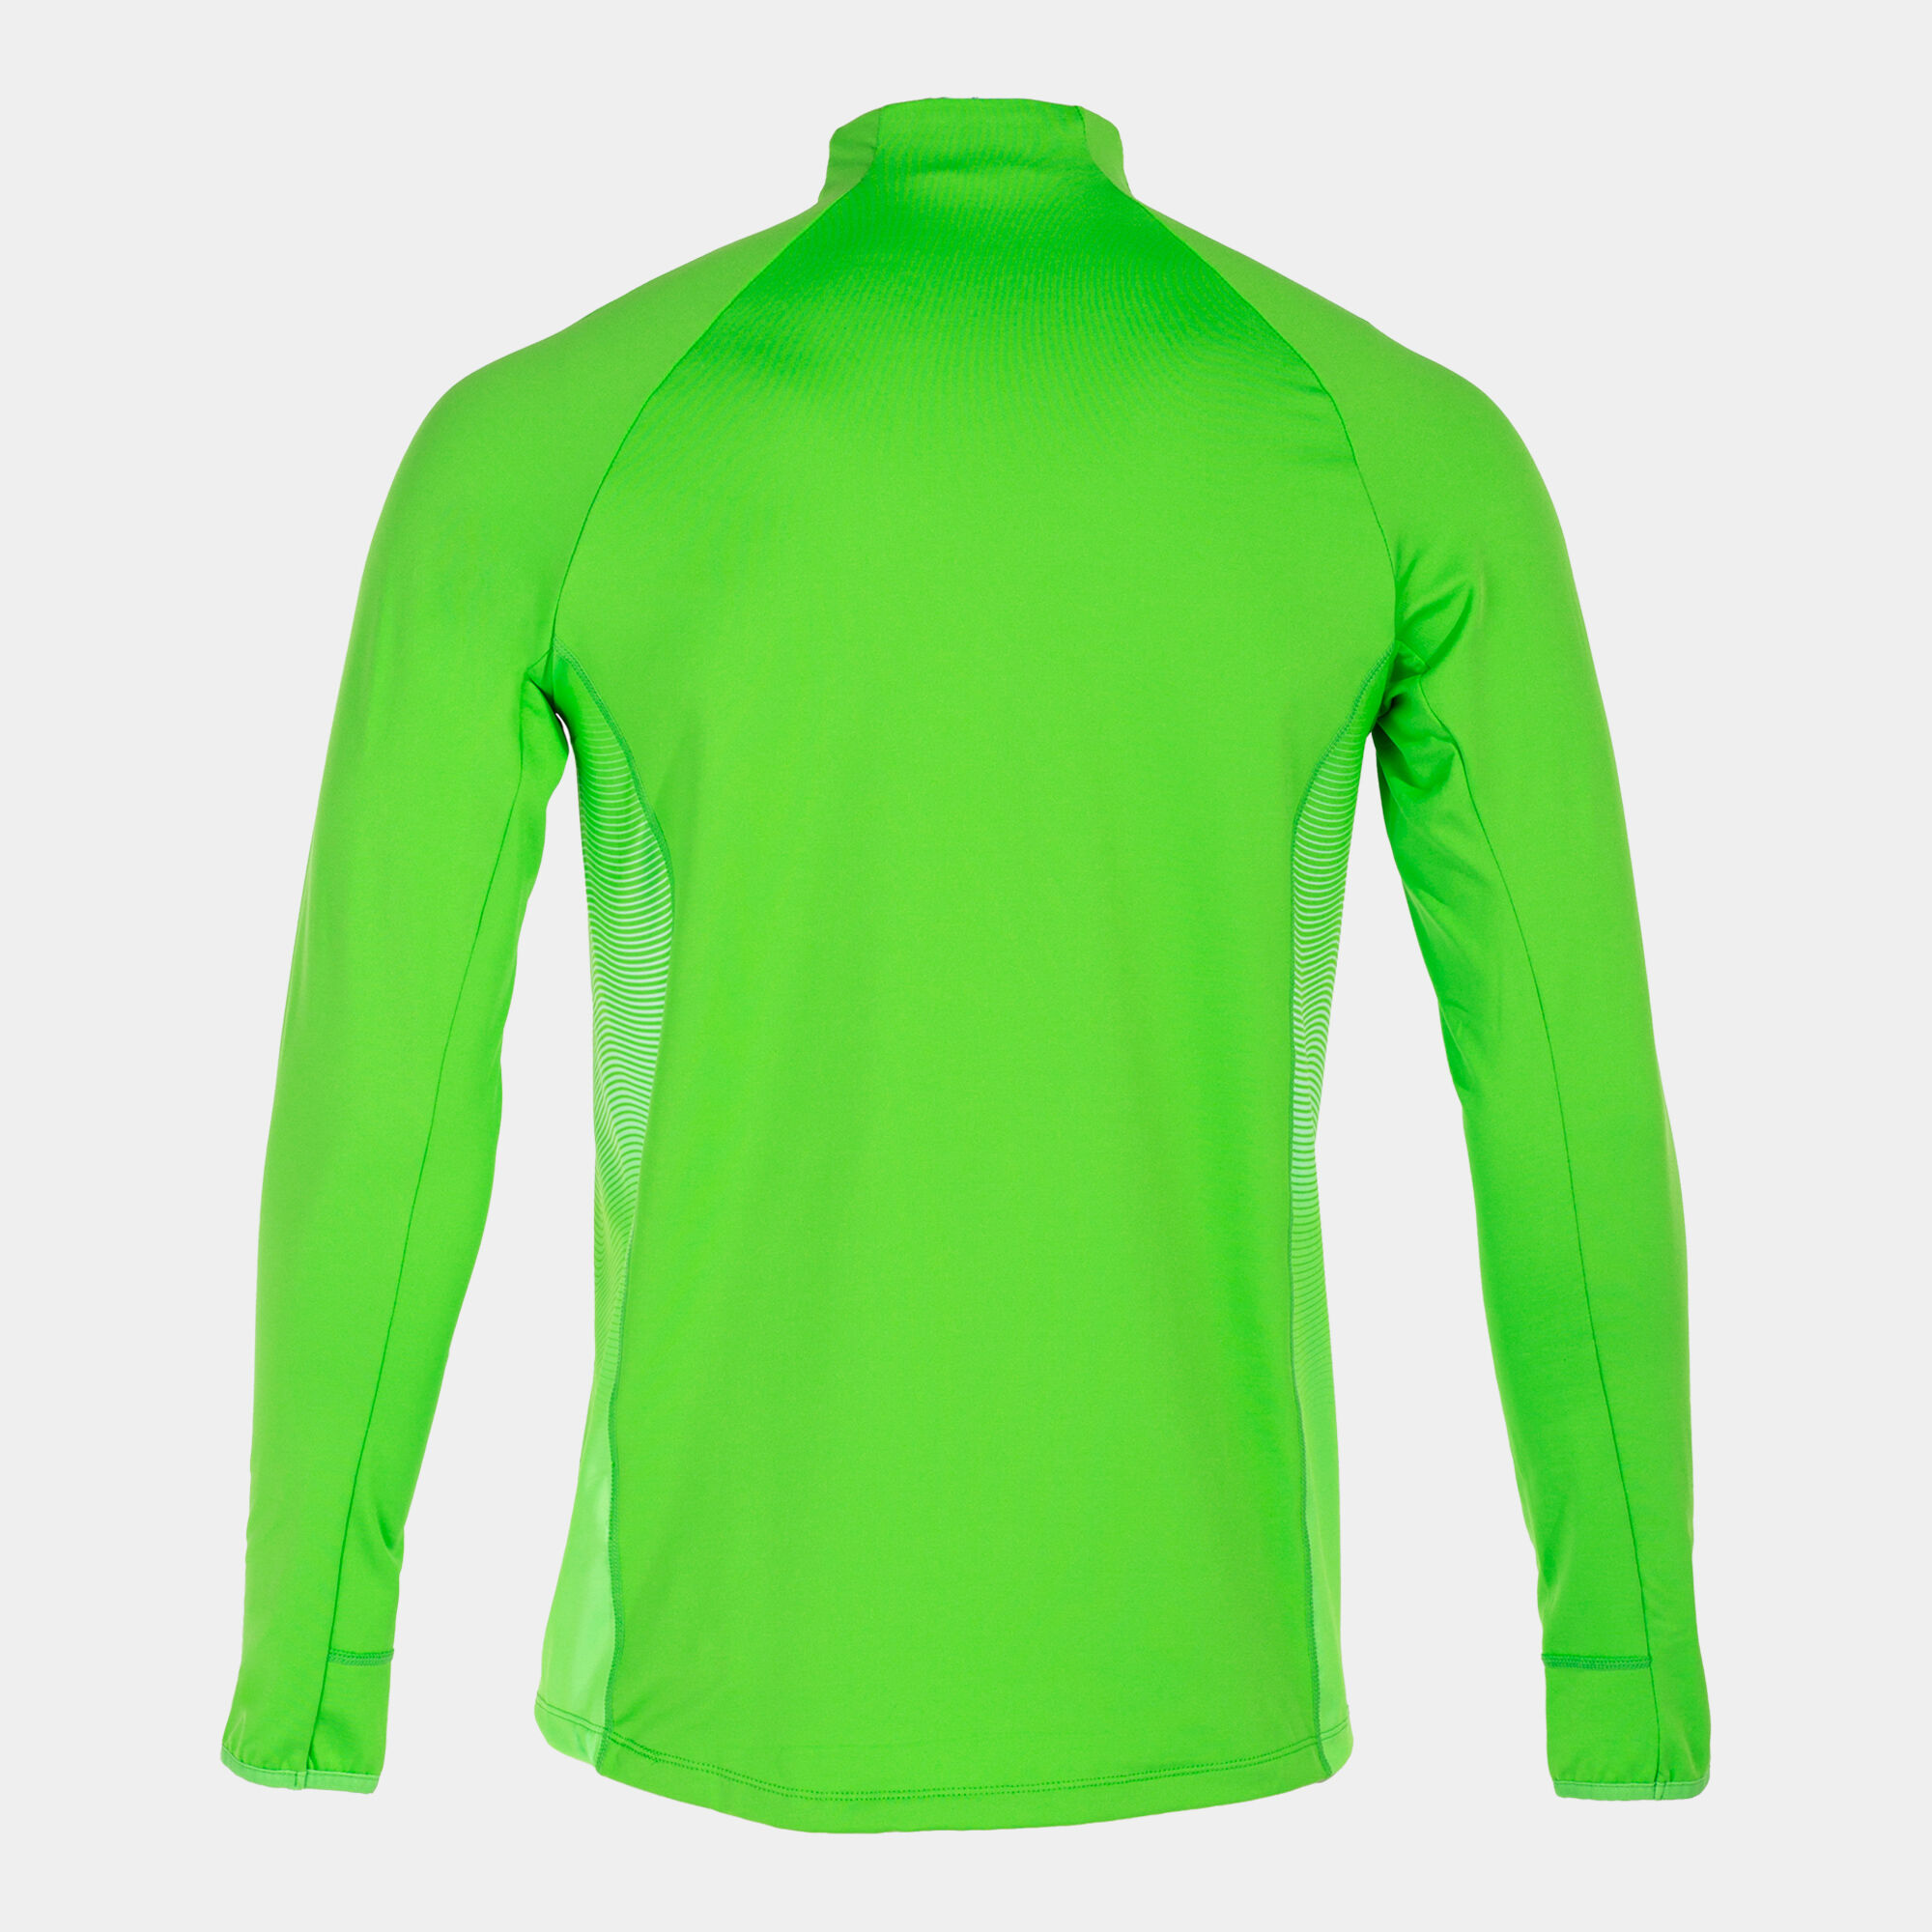 Bluza mężczyźni Elite VII fluorescencyjny zielony bialy